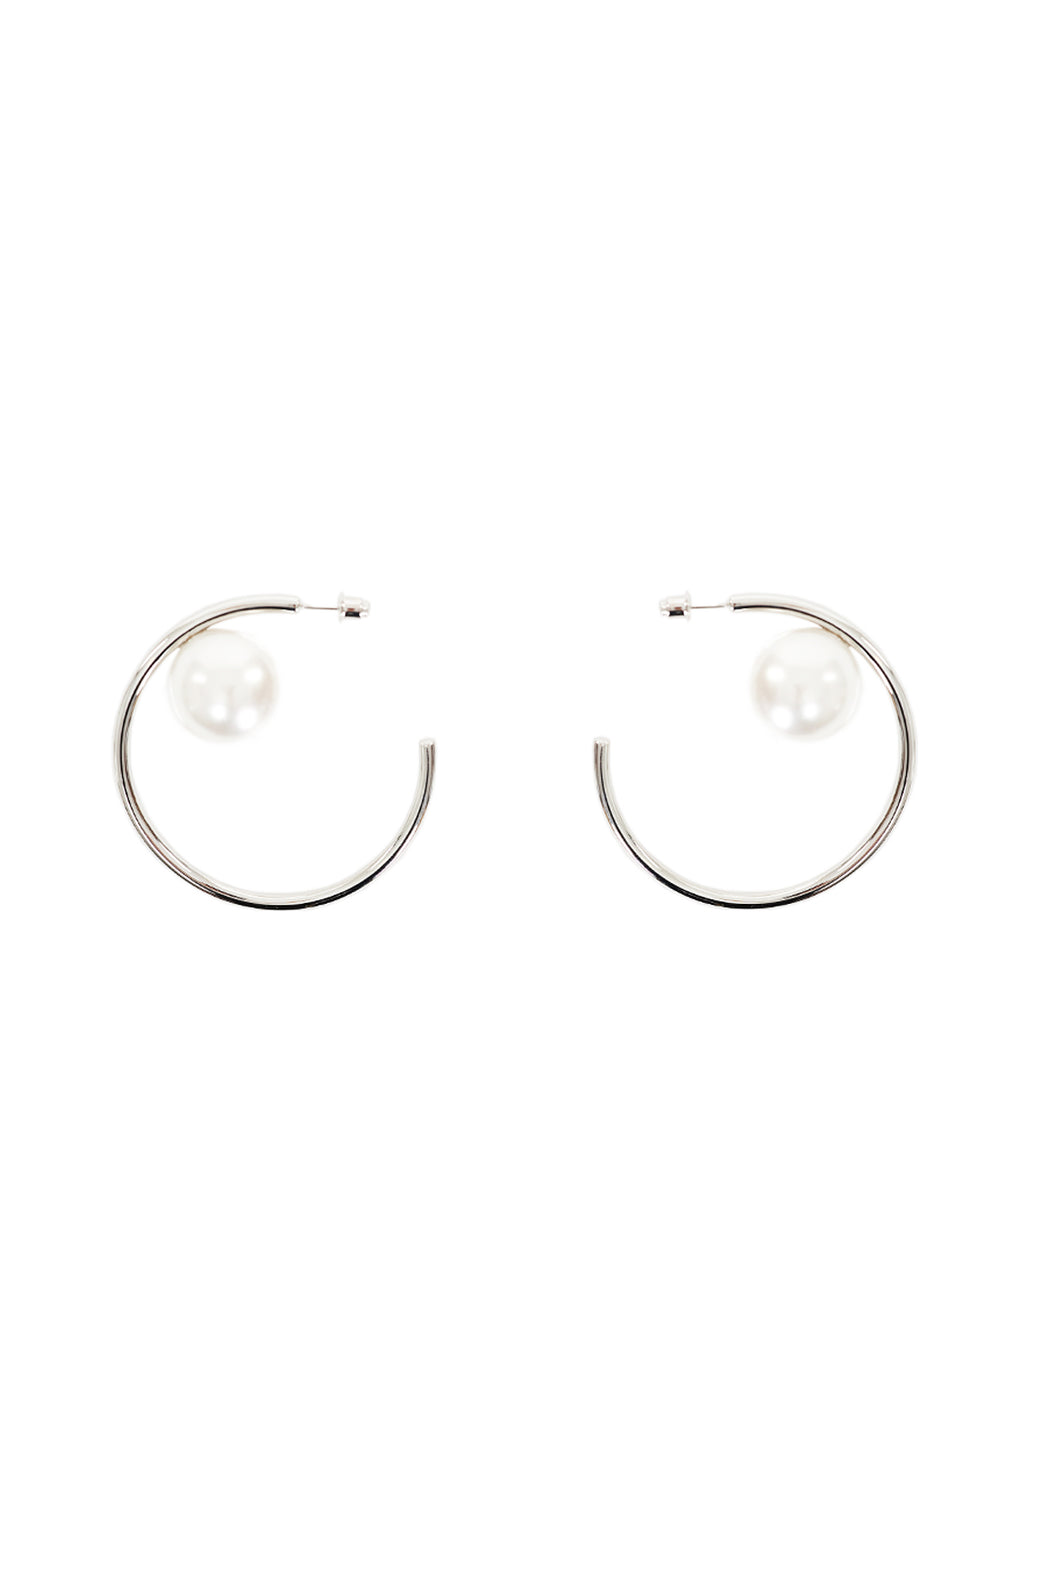 Pearl Earring - Silver